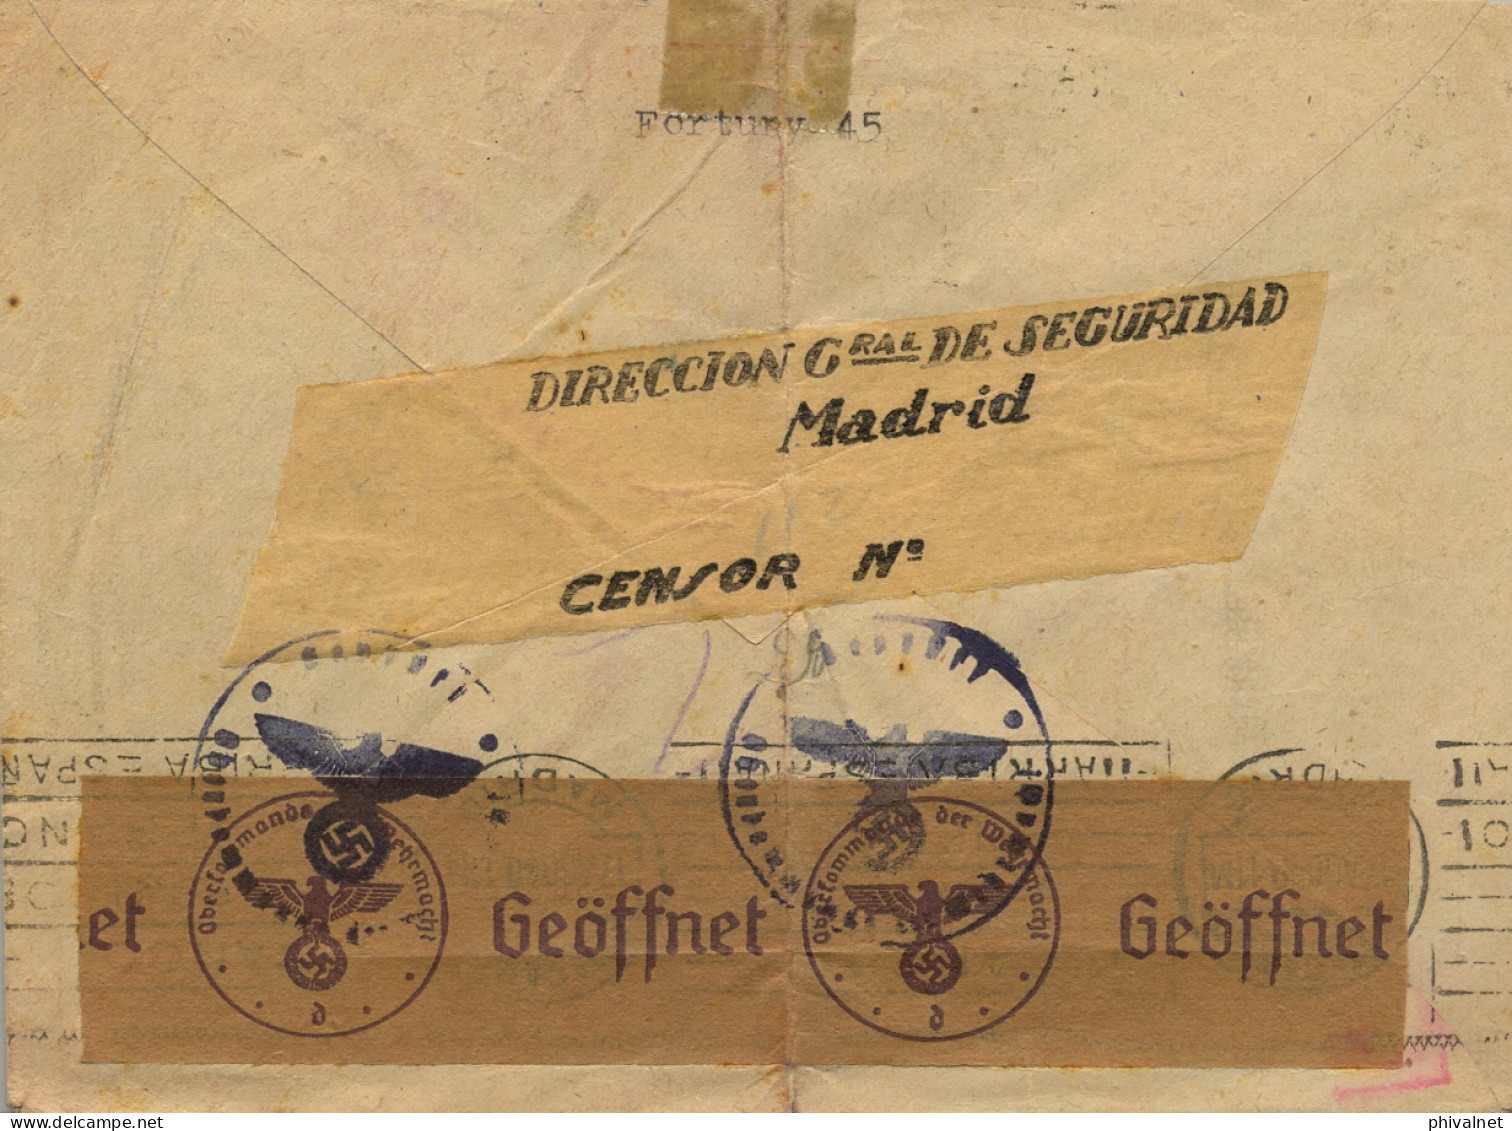 1940 , MADRID - OBERLIND , SOBRE CIRCULADO , DOBLE BANDA DE CIERRE DE CENSURA - Storia Postale